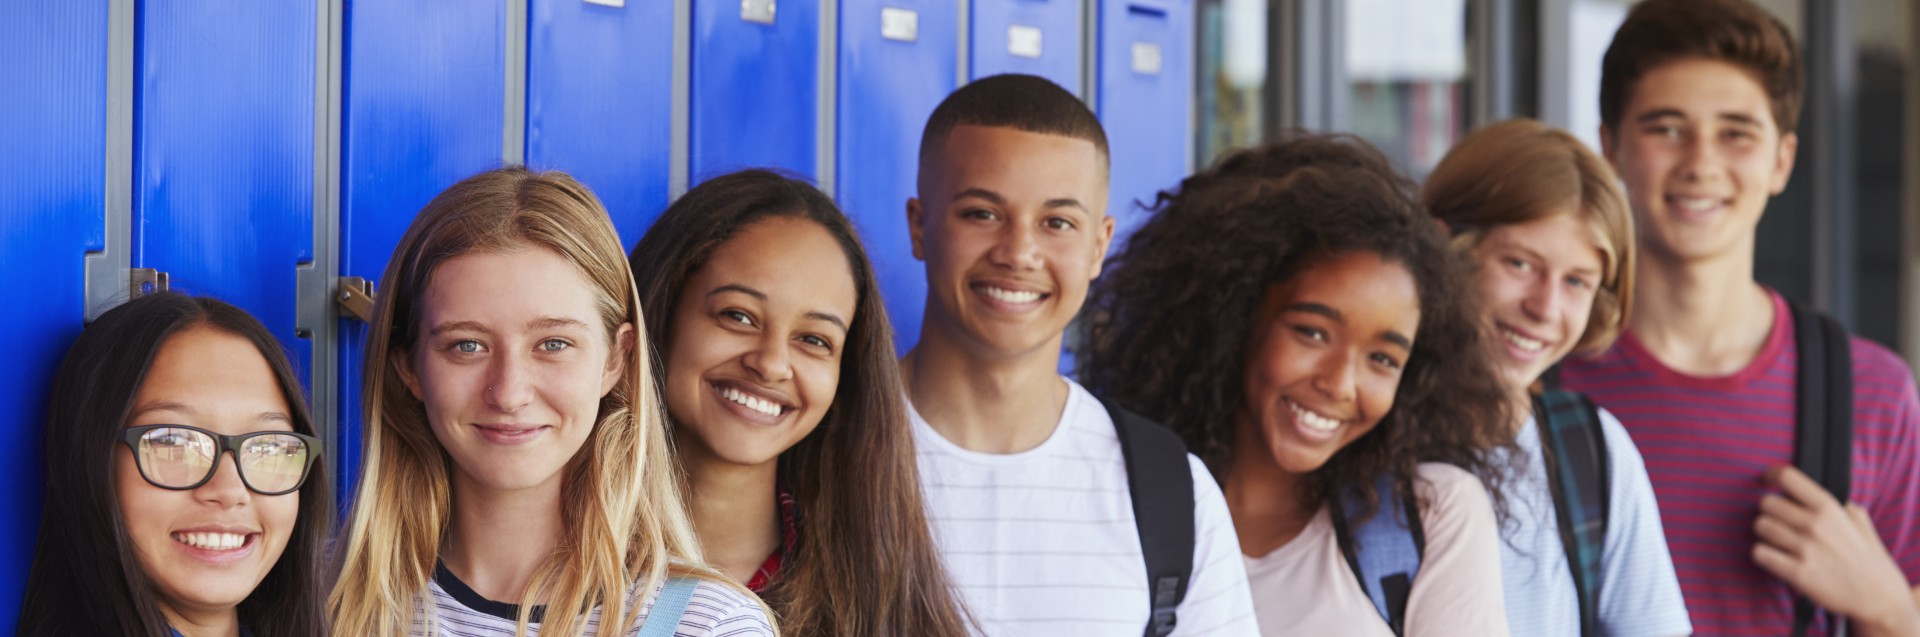 En gruppe smilende ungdommer står etter hverandre ved en skaprekke på en skole.